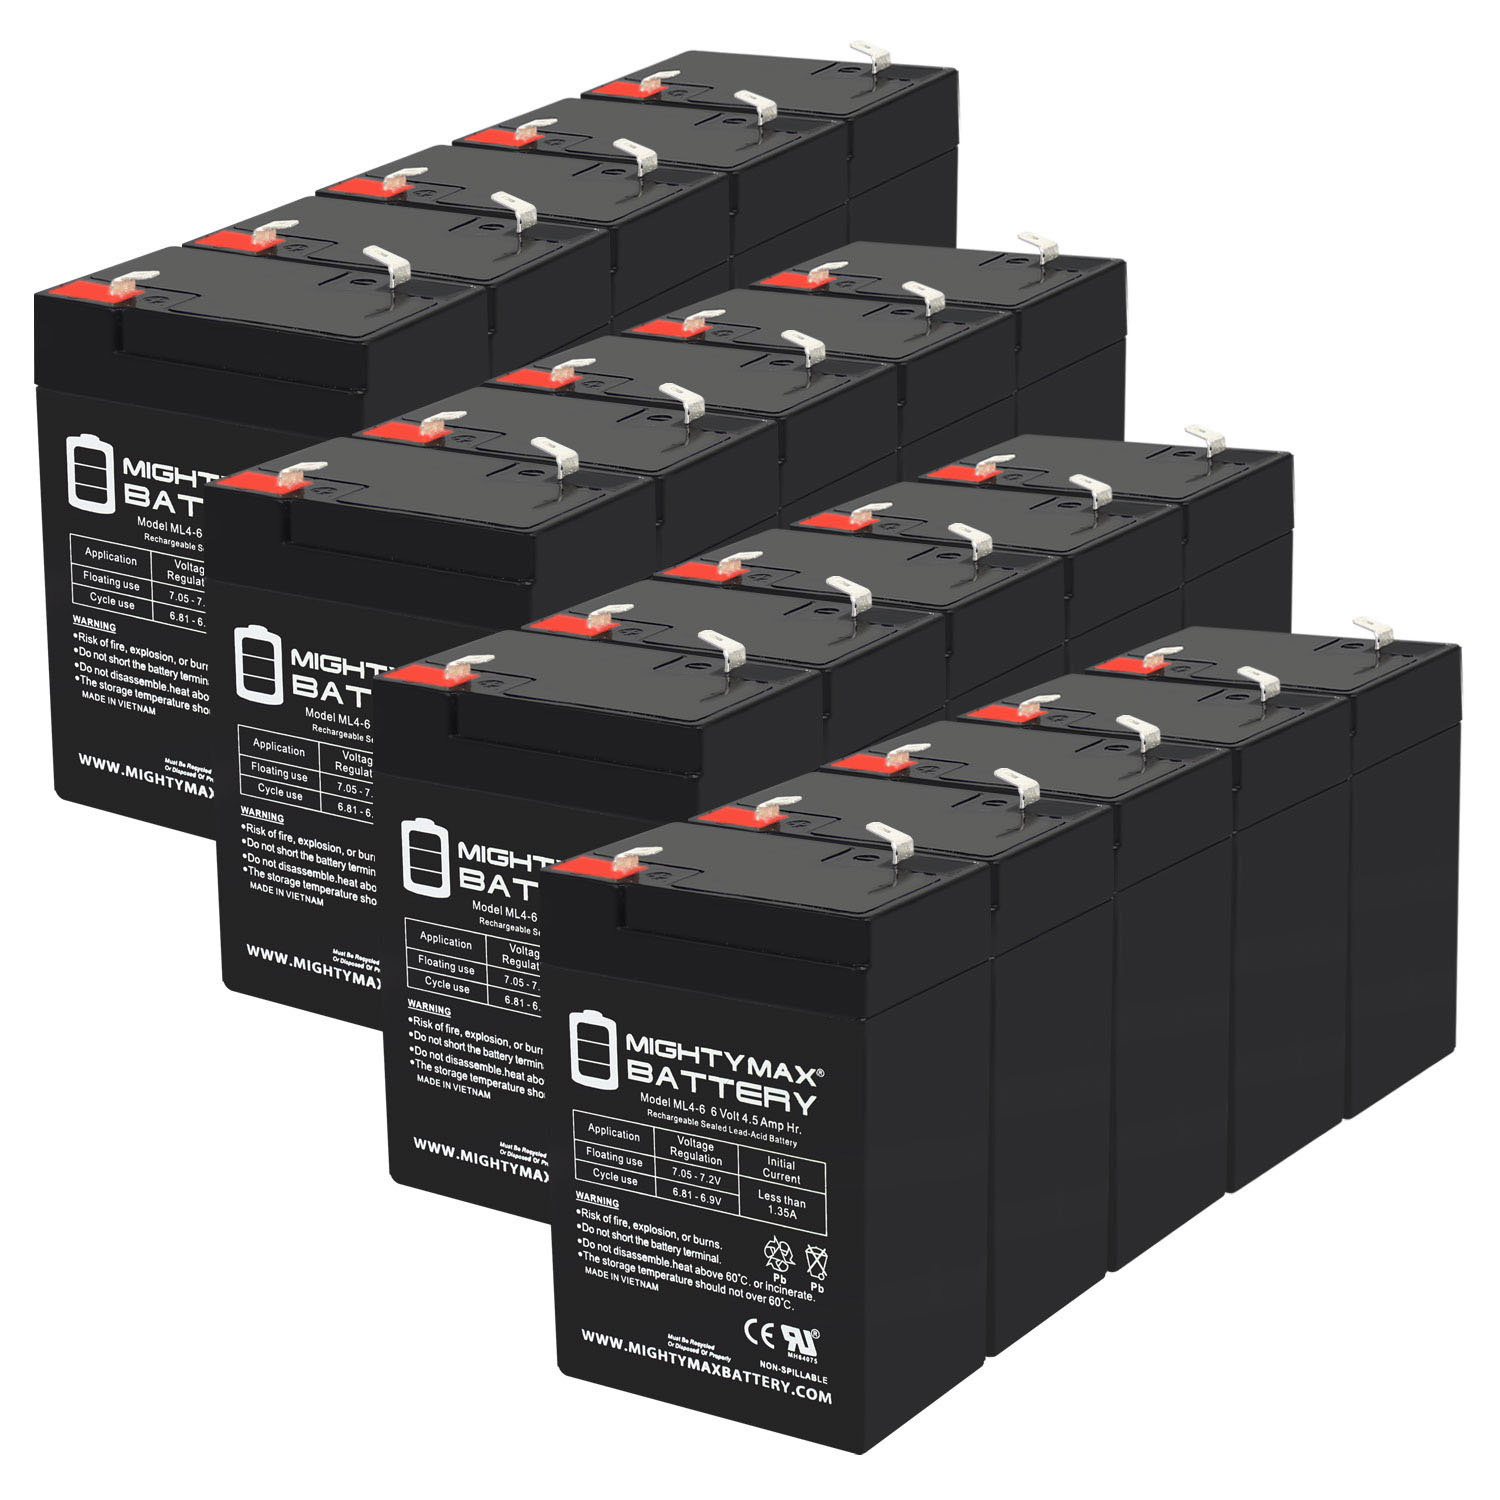 6V 4.5AH SLA Replacement Battery for Emergi-Lite 6LSM6 - 20 Pack